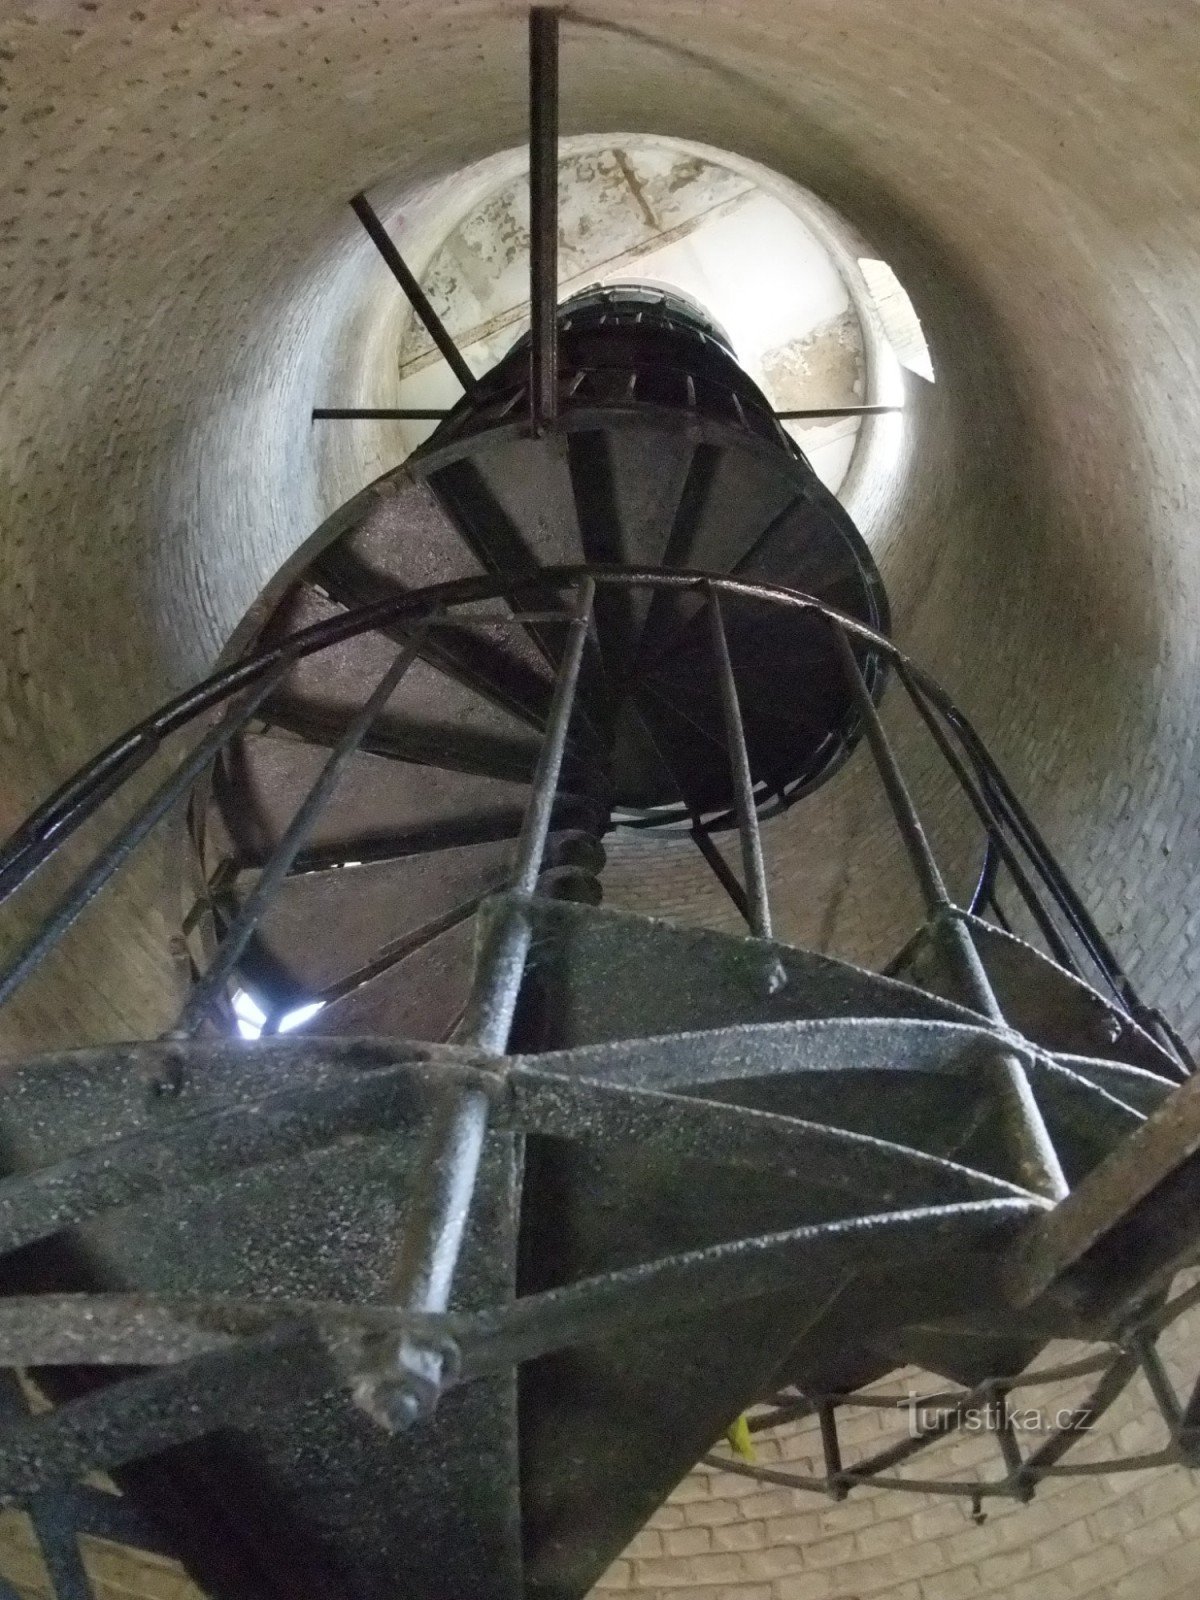 ボフショヴァーヴルチの見張り塔